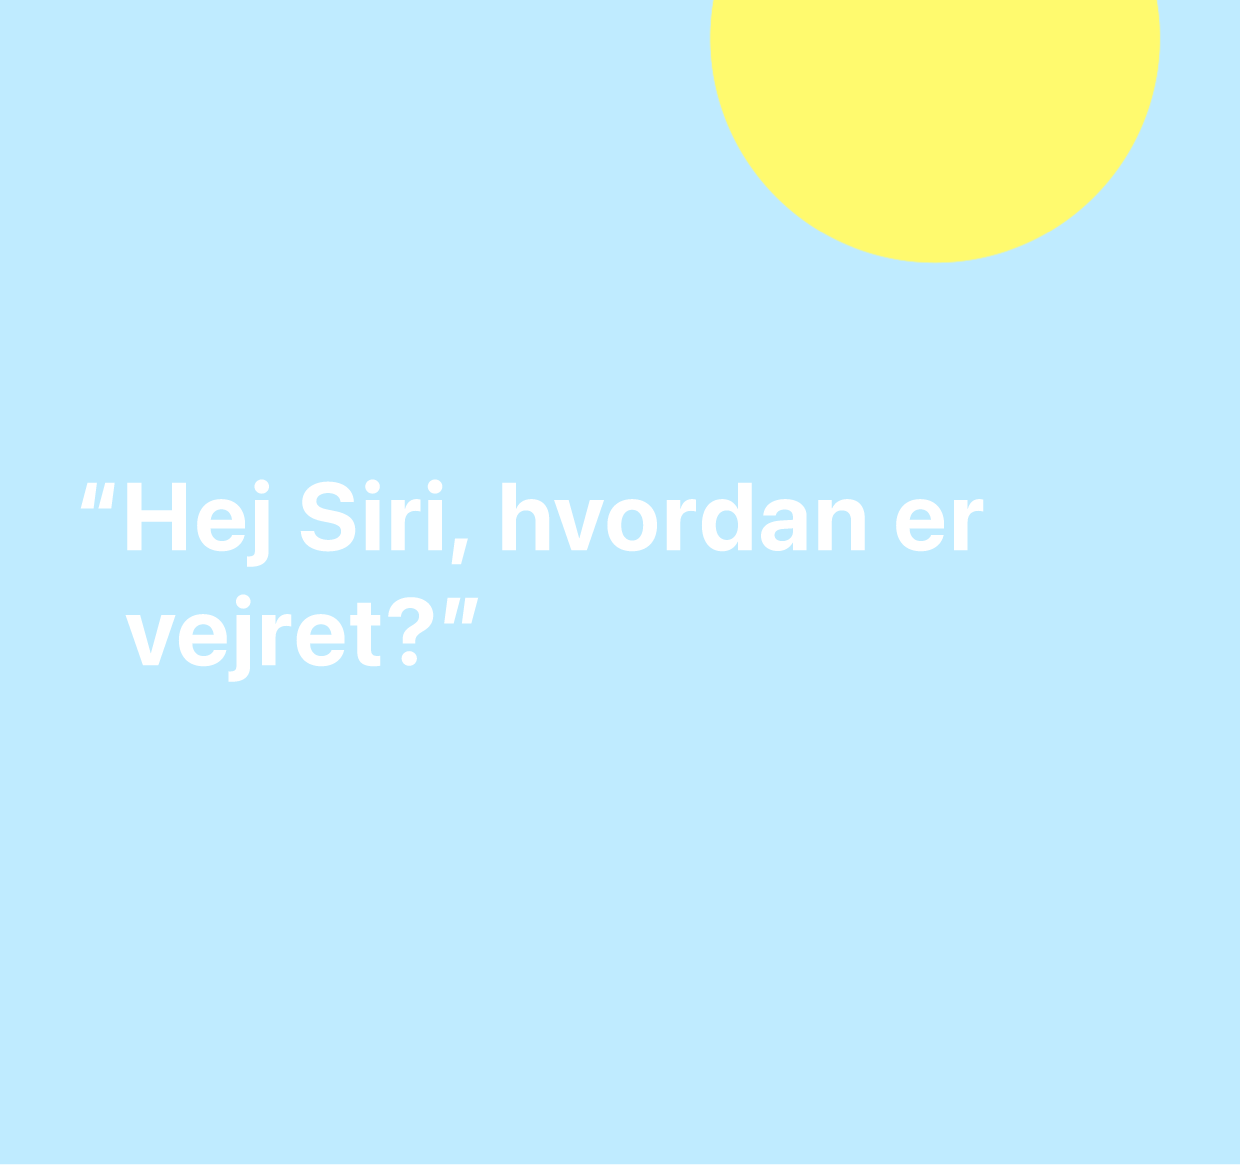 En illustration af ordene “Hej Siri, hvordan er vejret?”